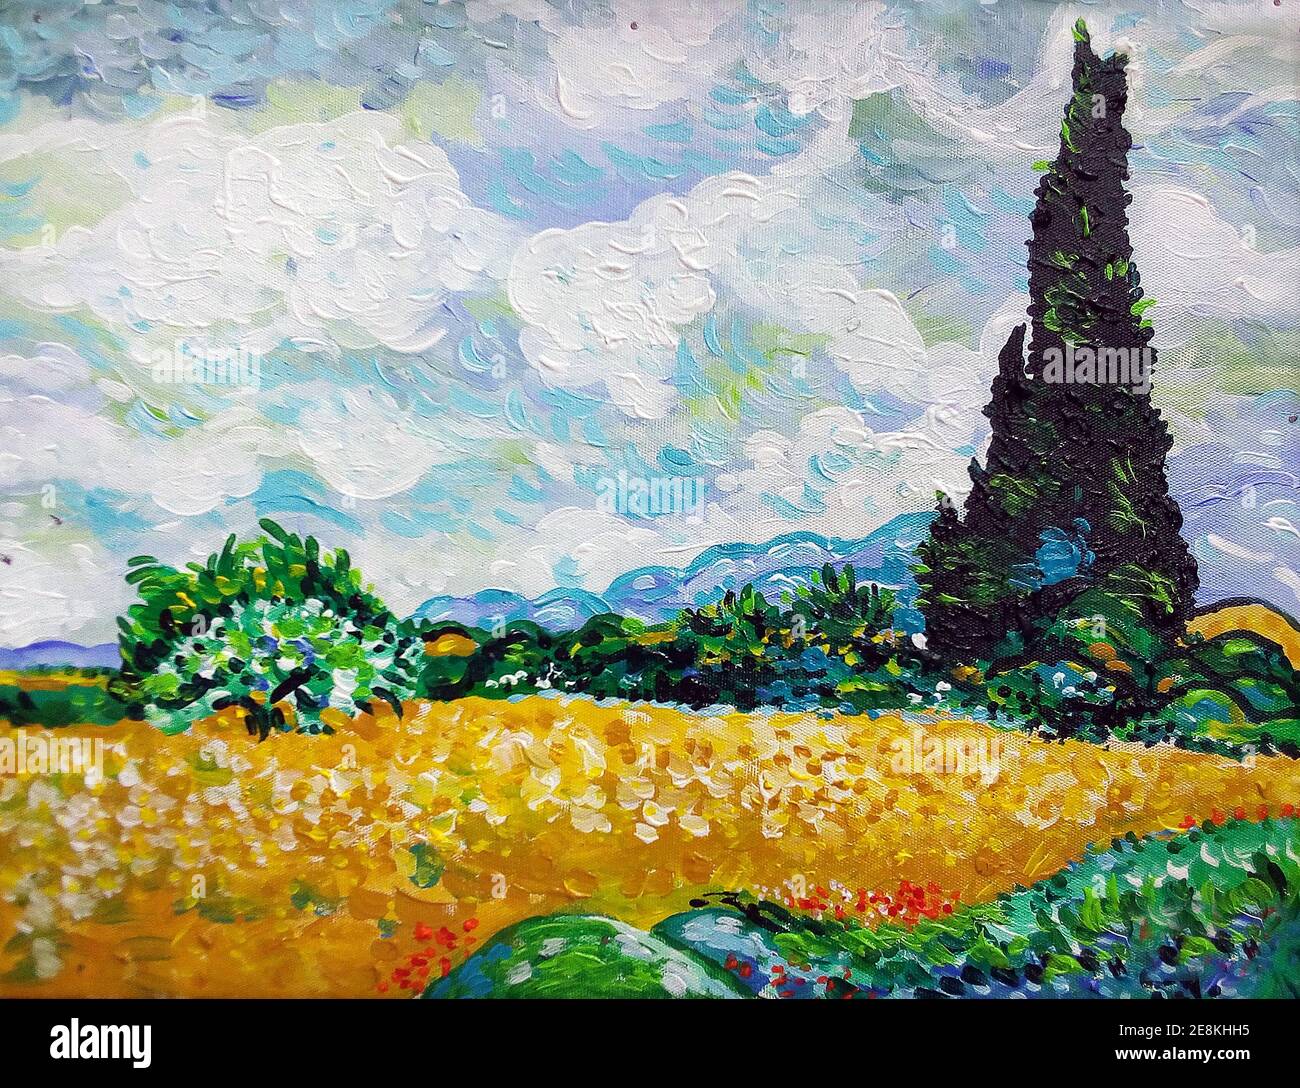 Kunstmalerei Ölfarbe View Tree, van Gogh, Landschaft Stockfoto